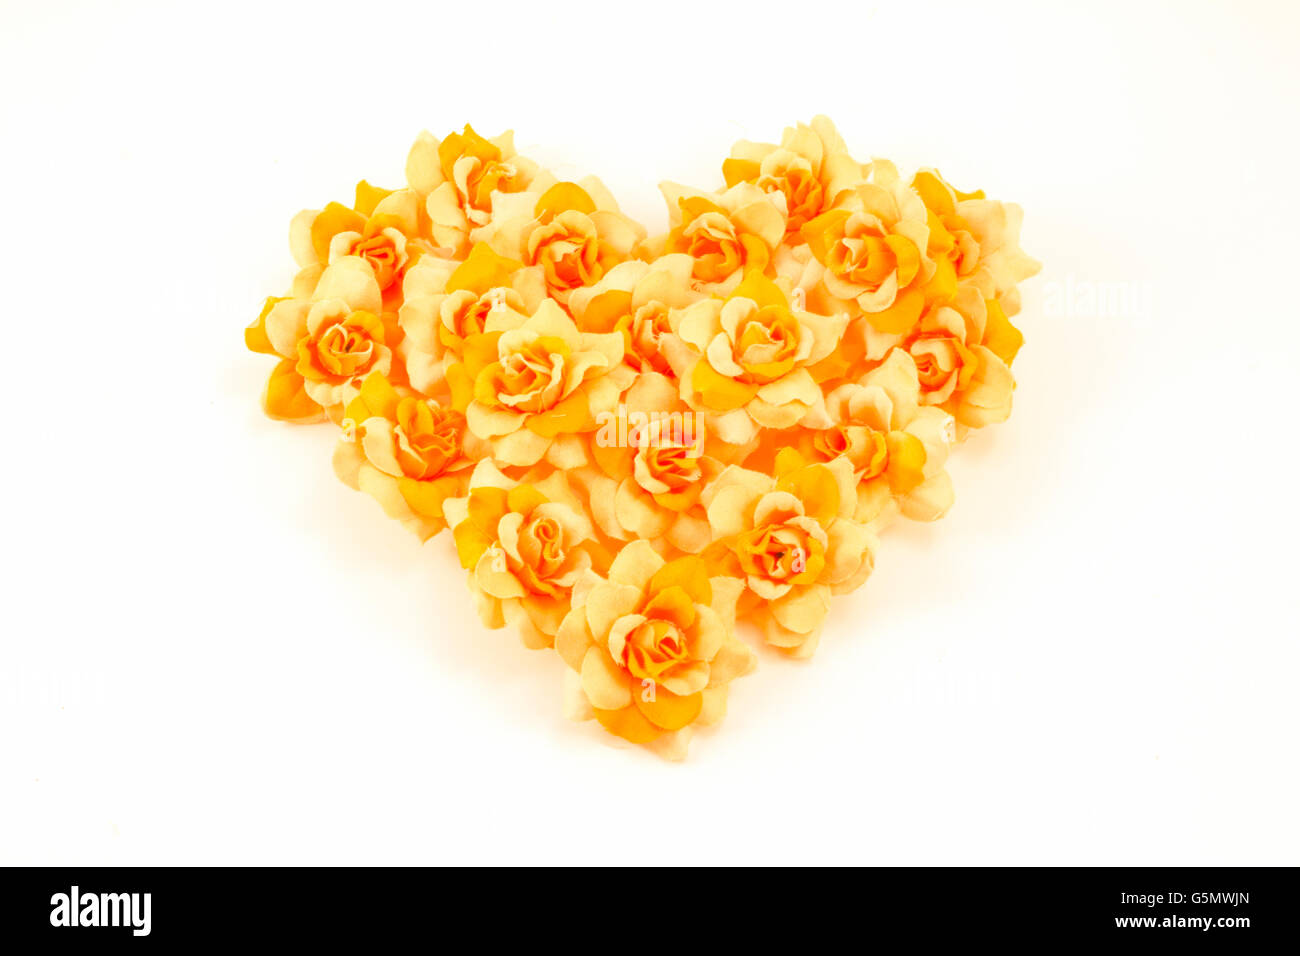 Orange flowers arranged in a heart Stock Photo